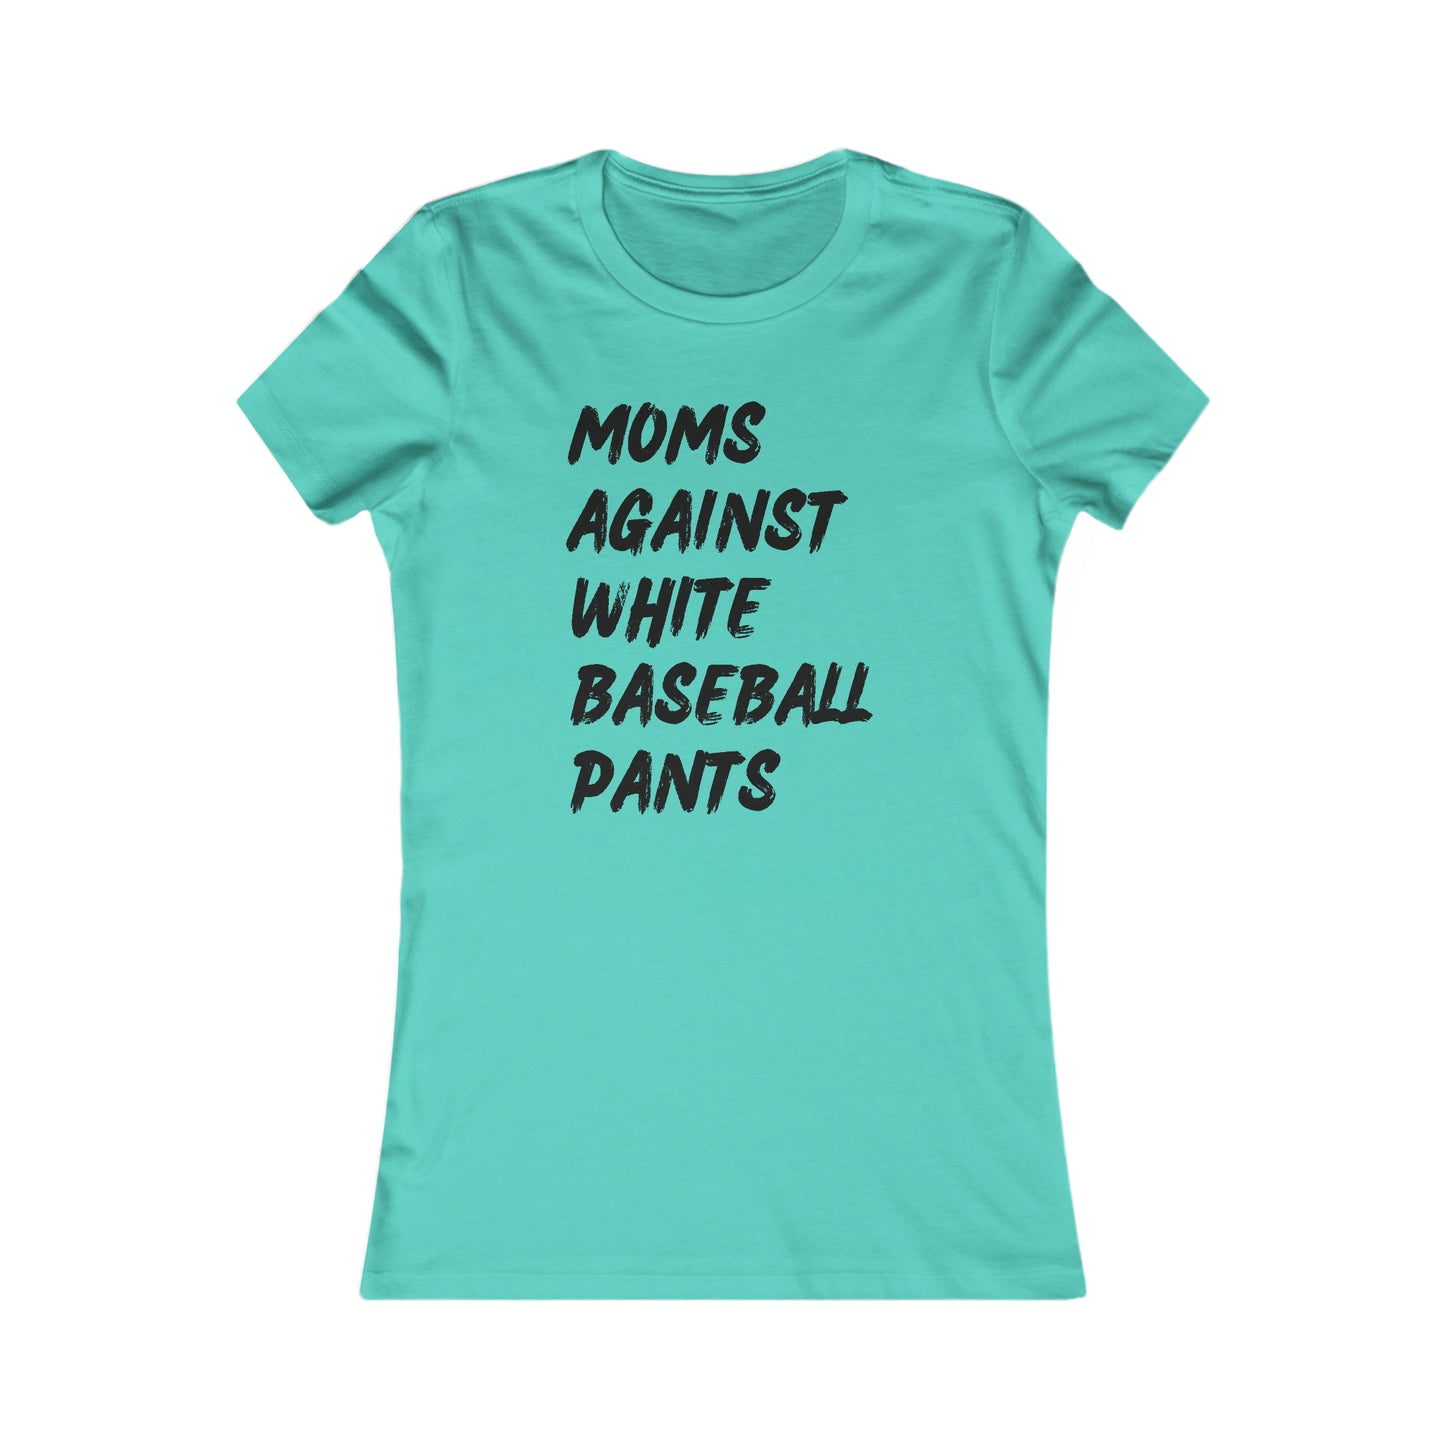 Moms Against White Baseball Pants - Women's Favorite Tee